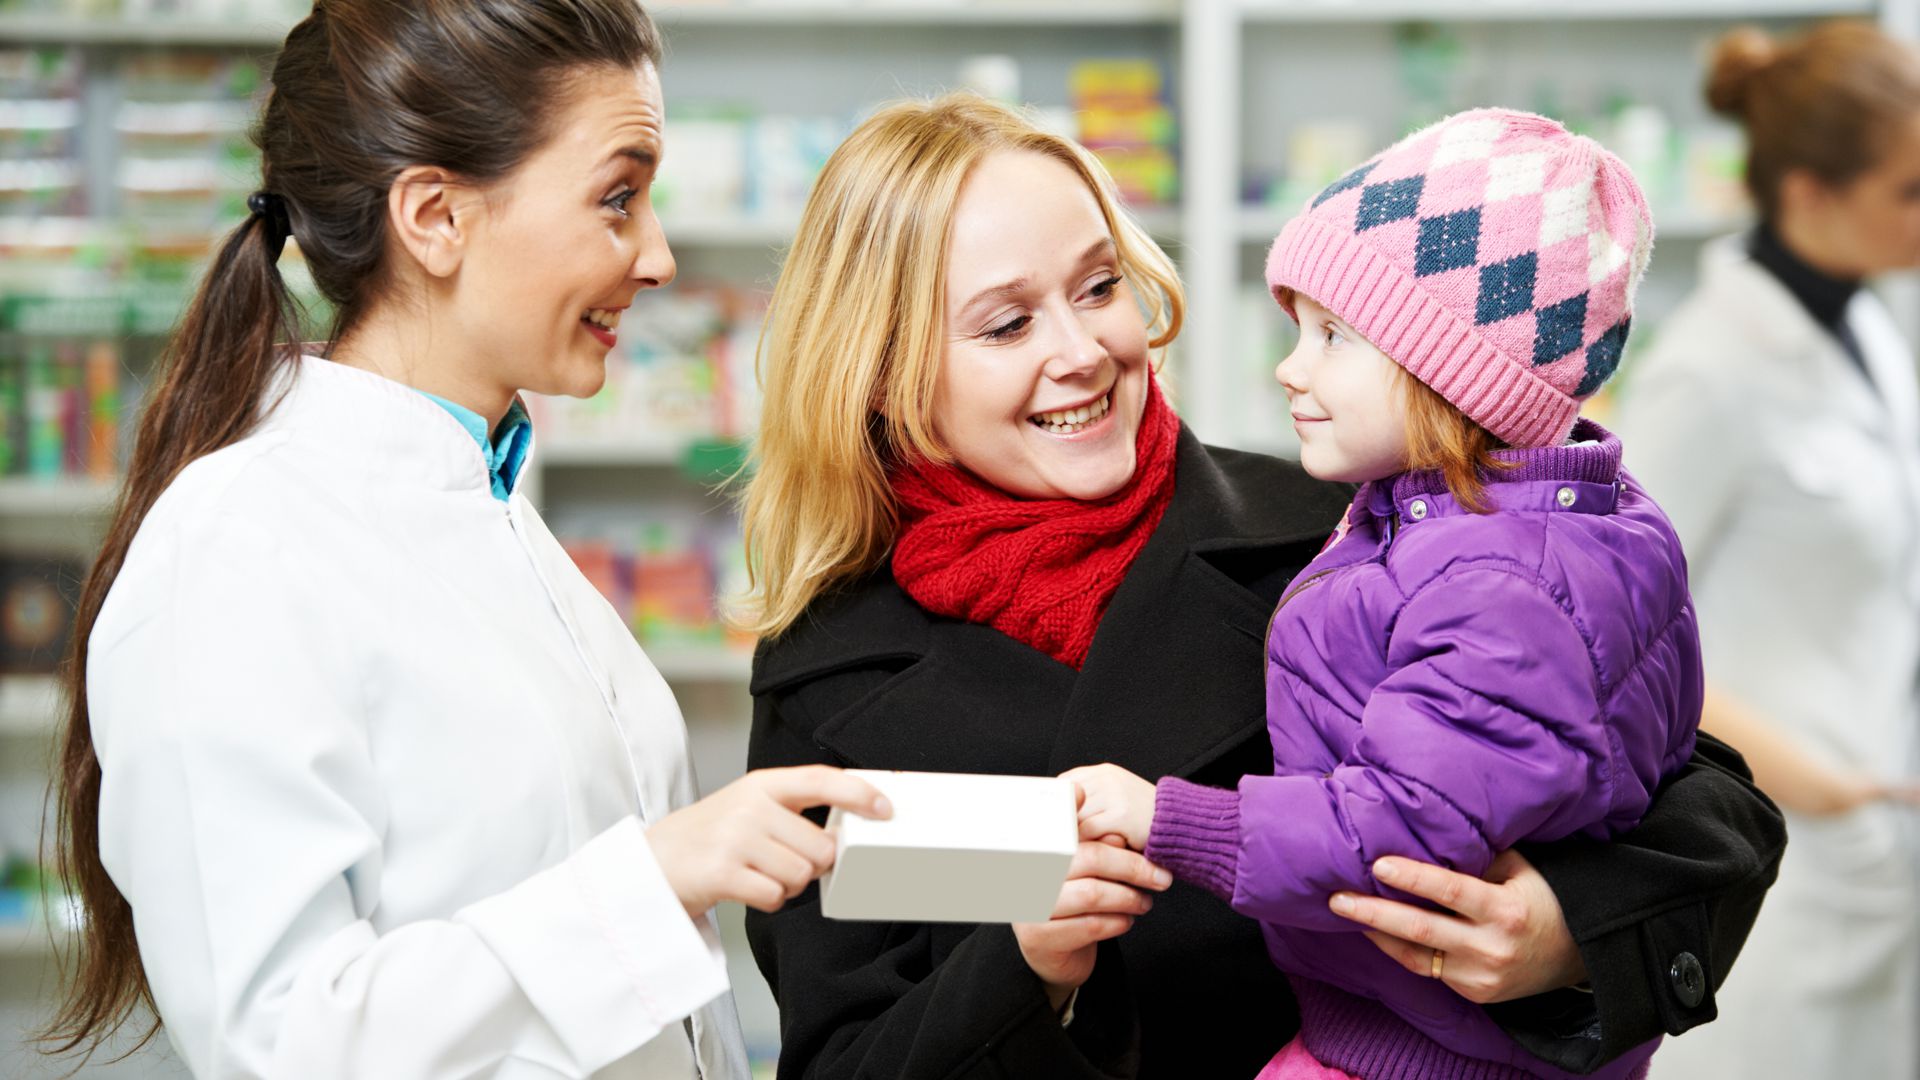 Weitere hilfreiche Informationen rund um die Gesundheit bieten die freundlichen Experten in den Apotheken vor Ort.